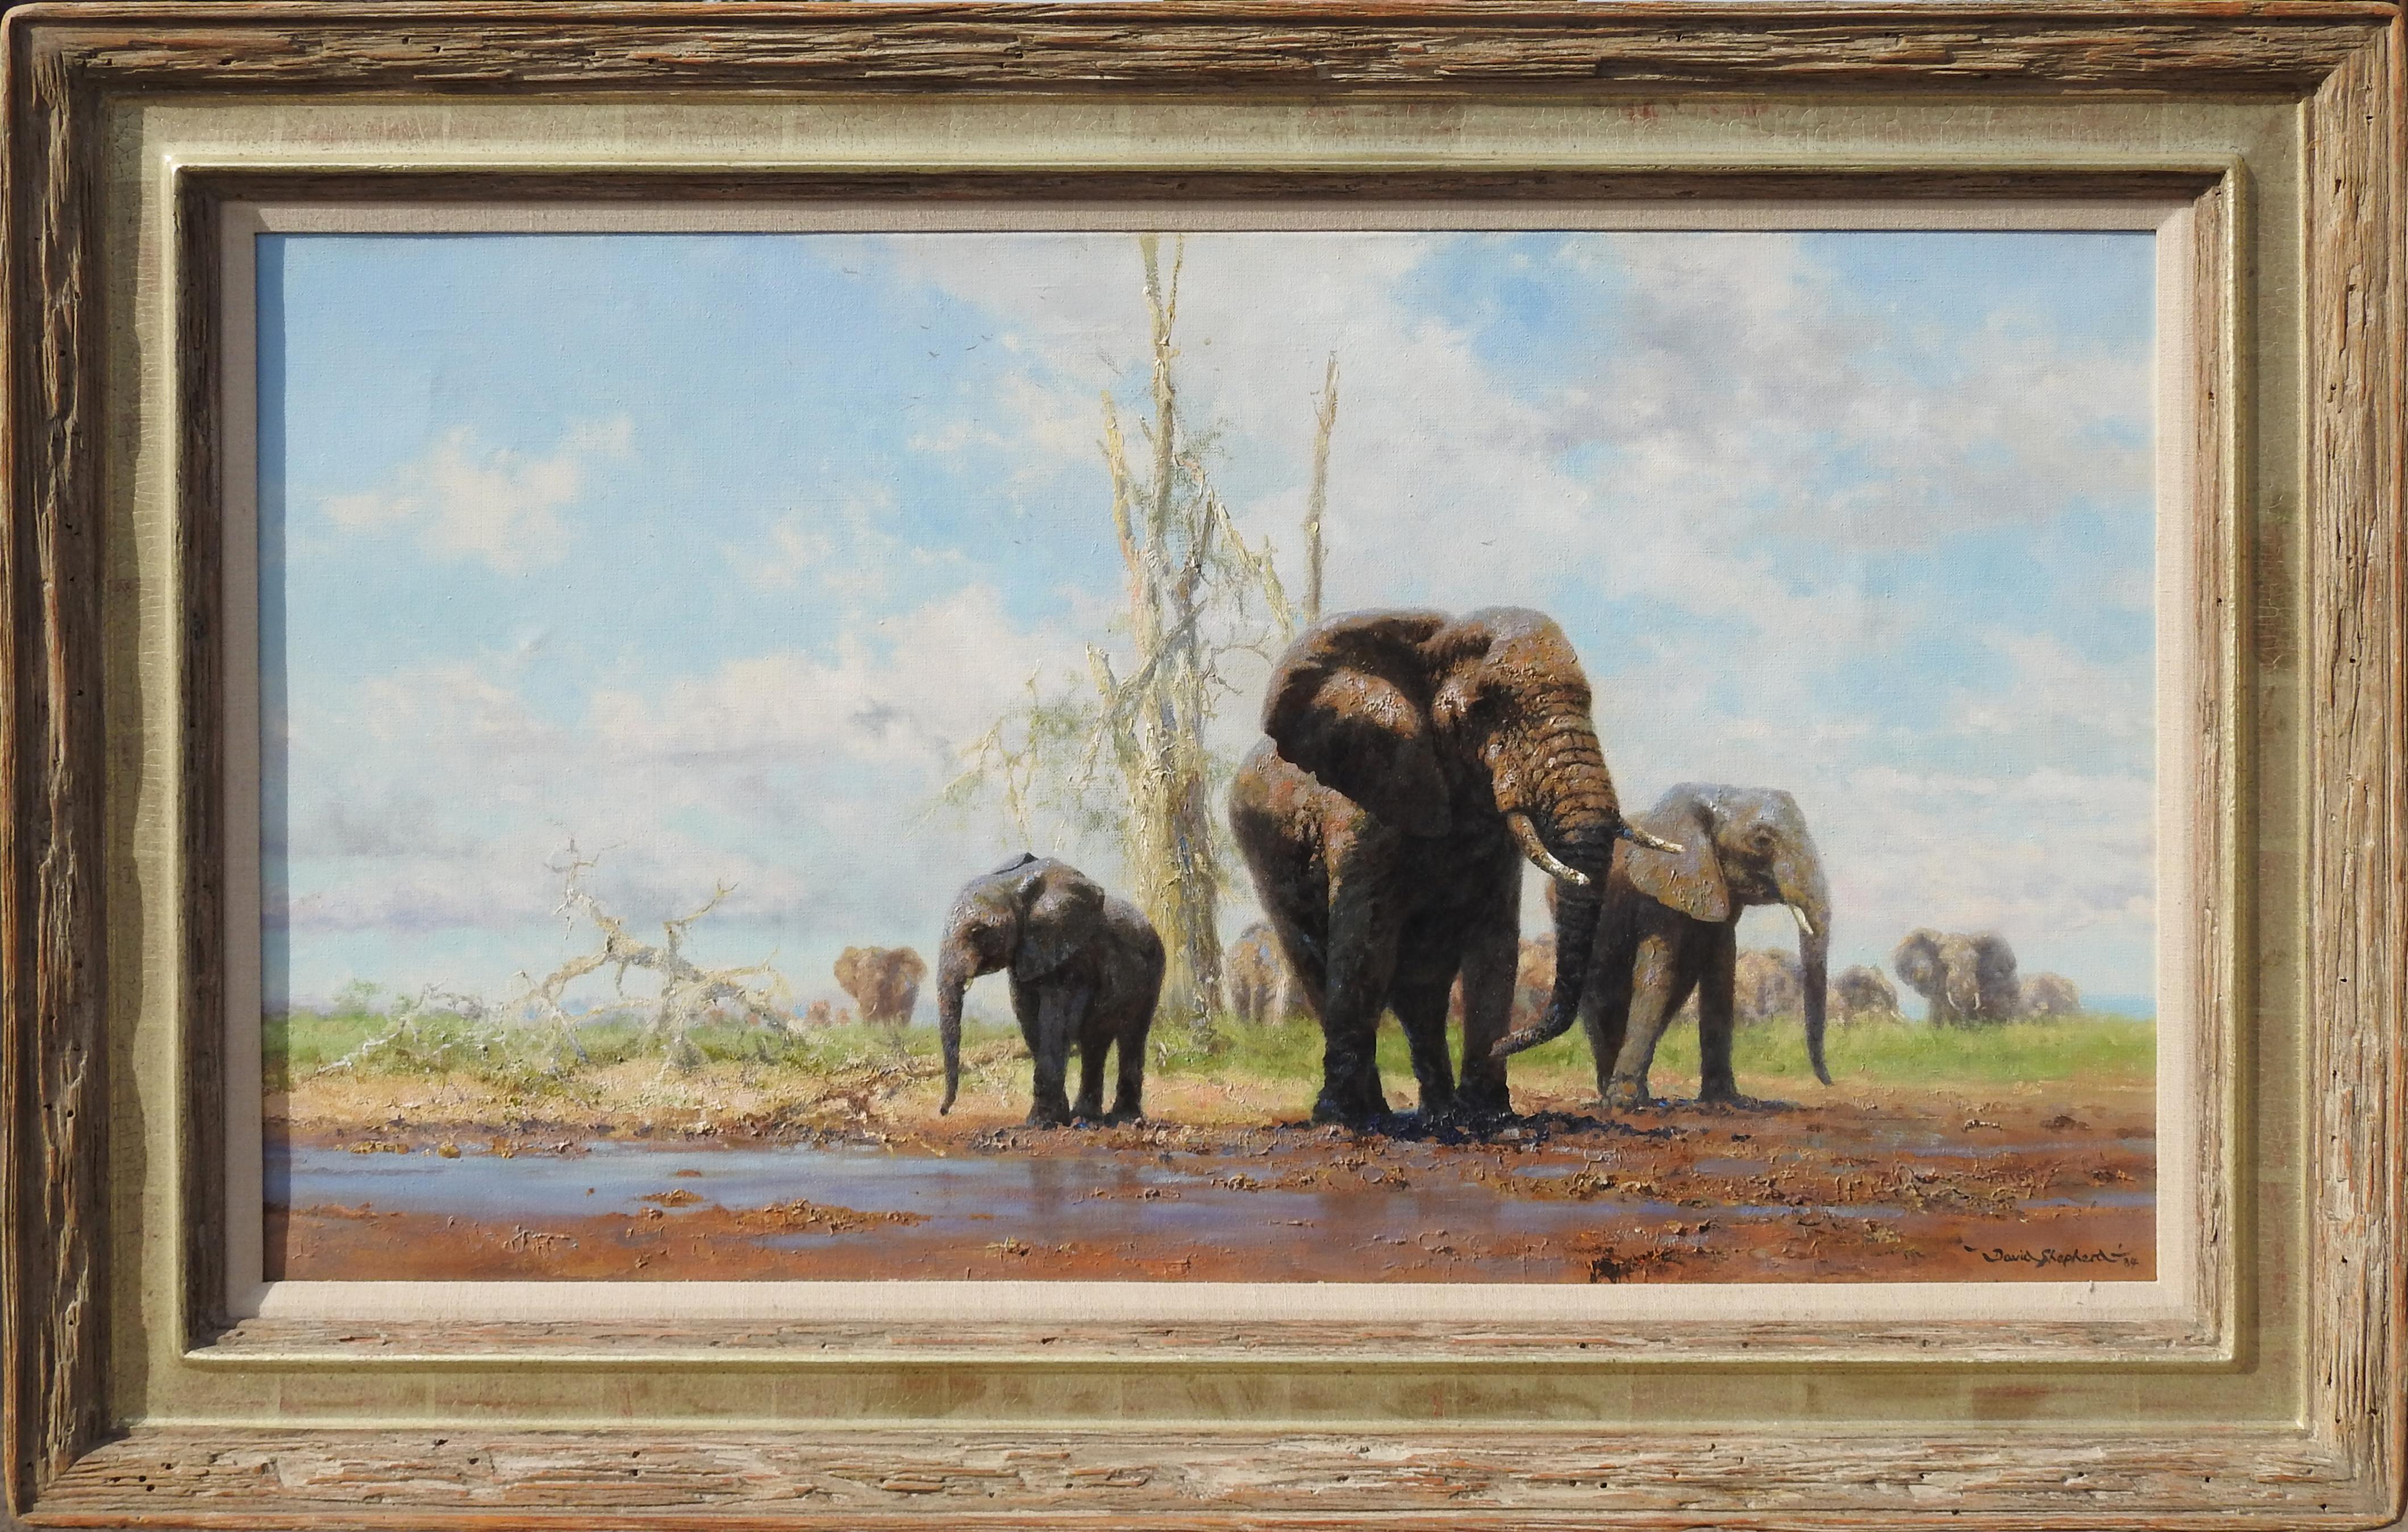 "Herd of Elephants", David Shepherd, 20x35.5, Original Oil, Realistic Wildlife